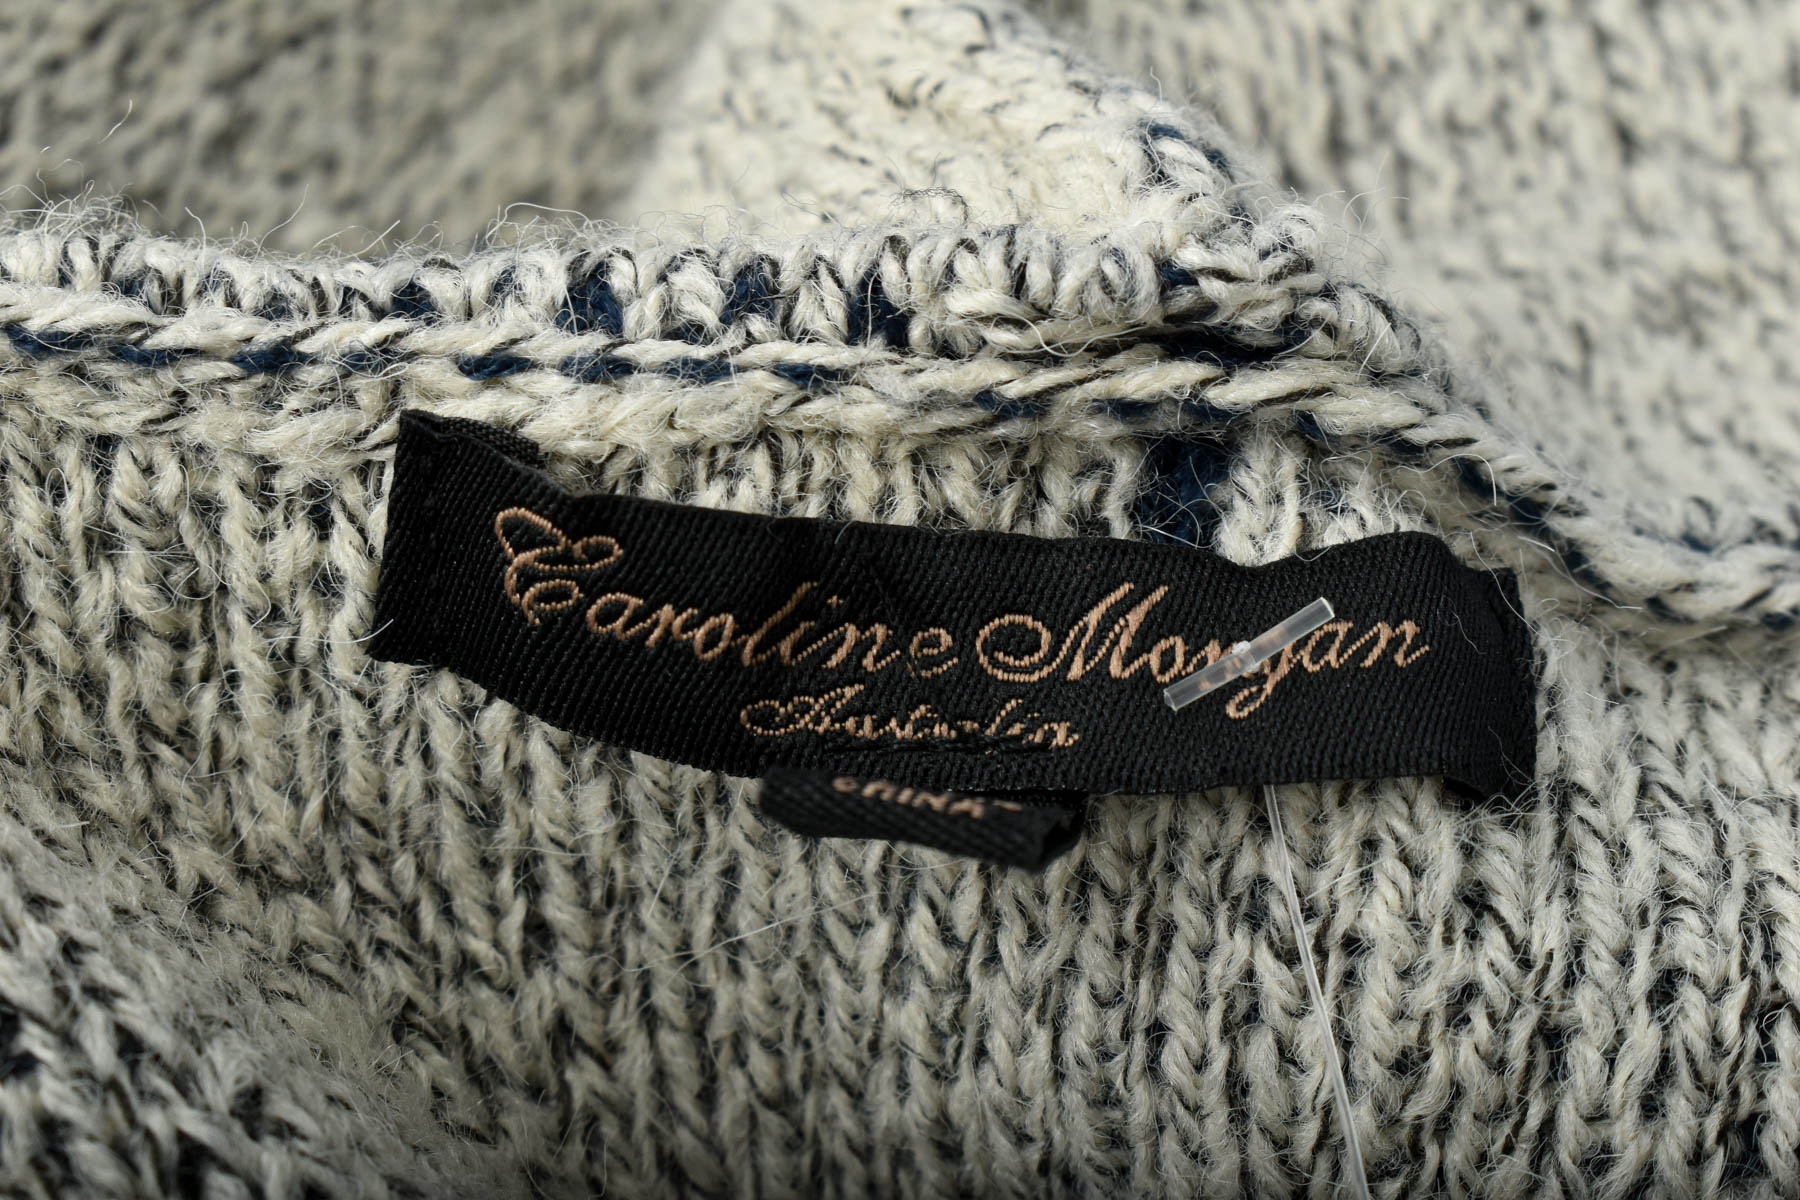 Women's cardigan - Caroline Morgan - 2